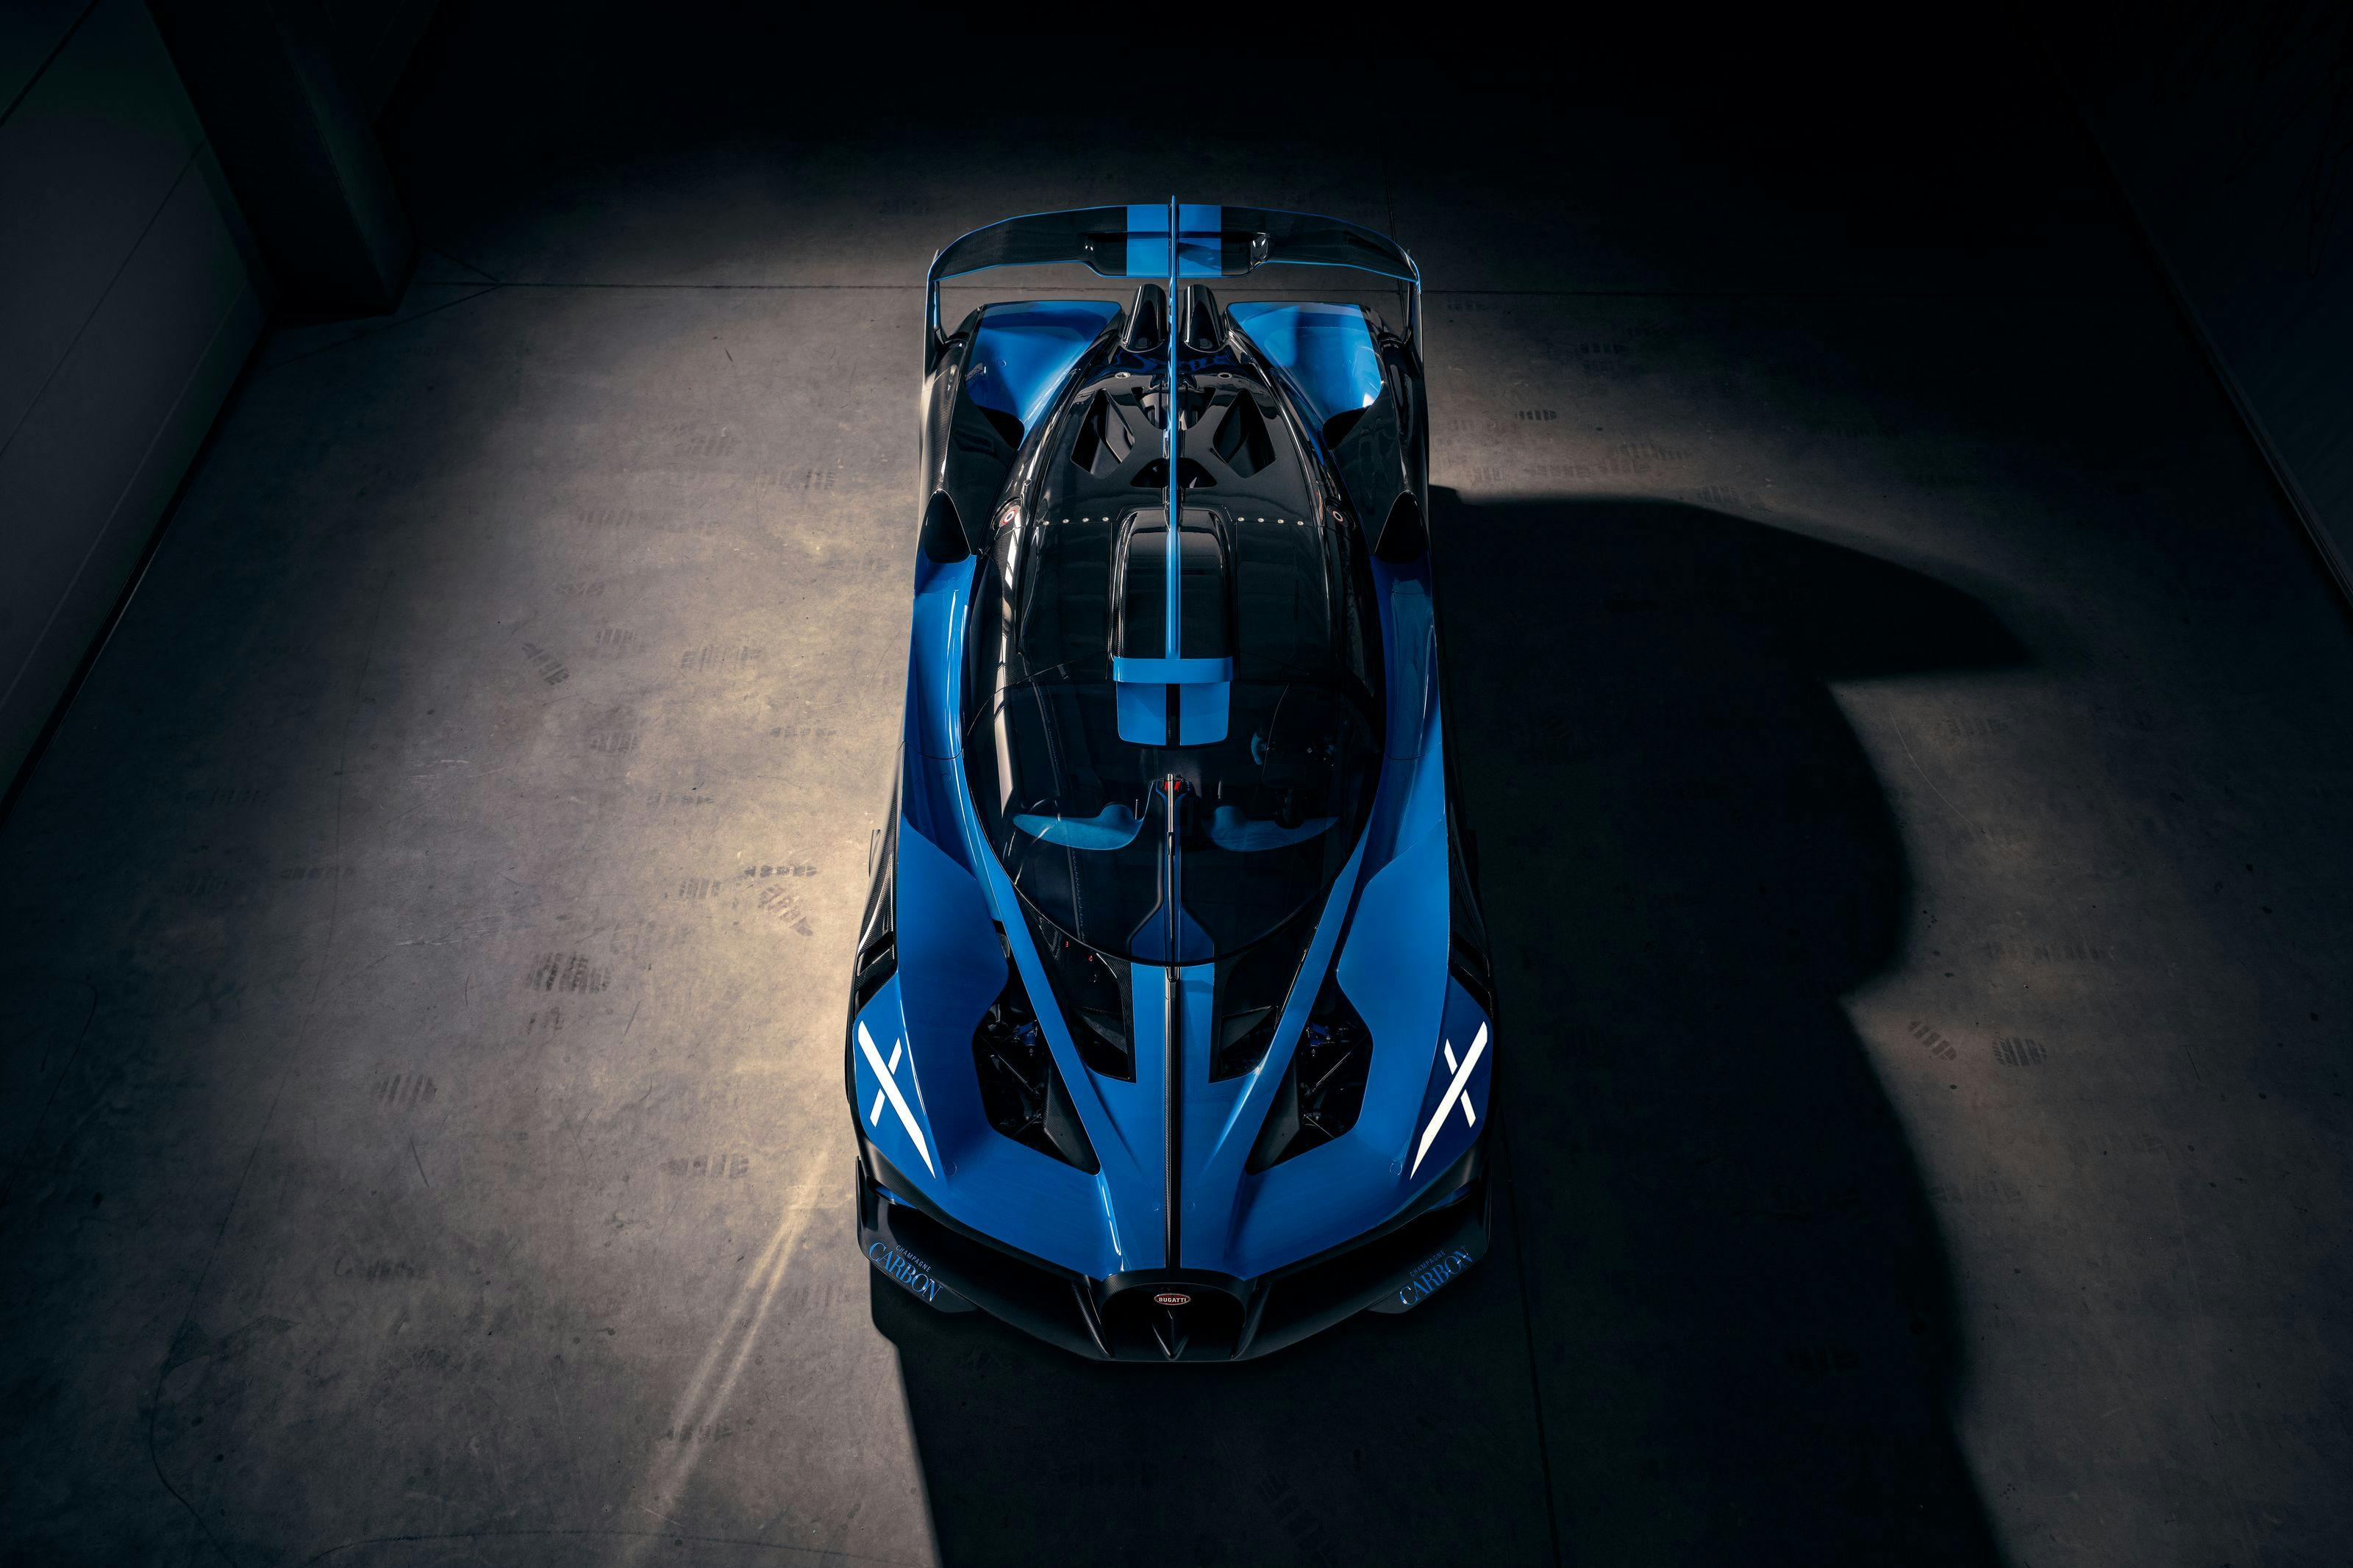 Bugatti Photo Release – The Bugatti Bolide is real